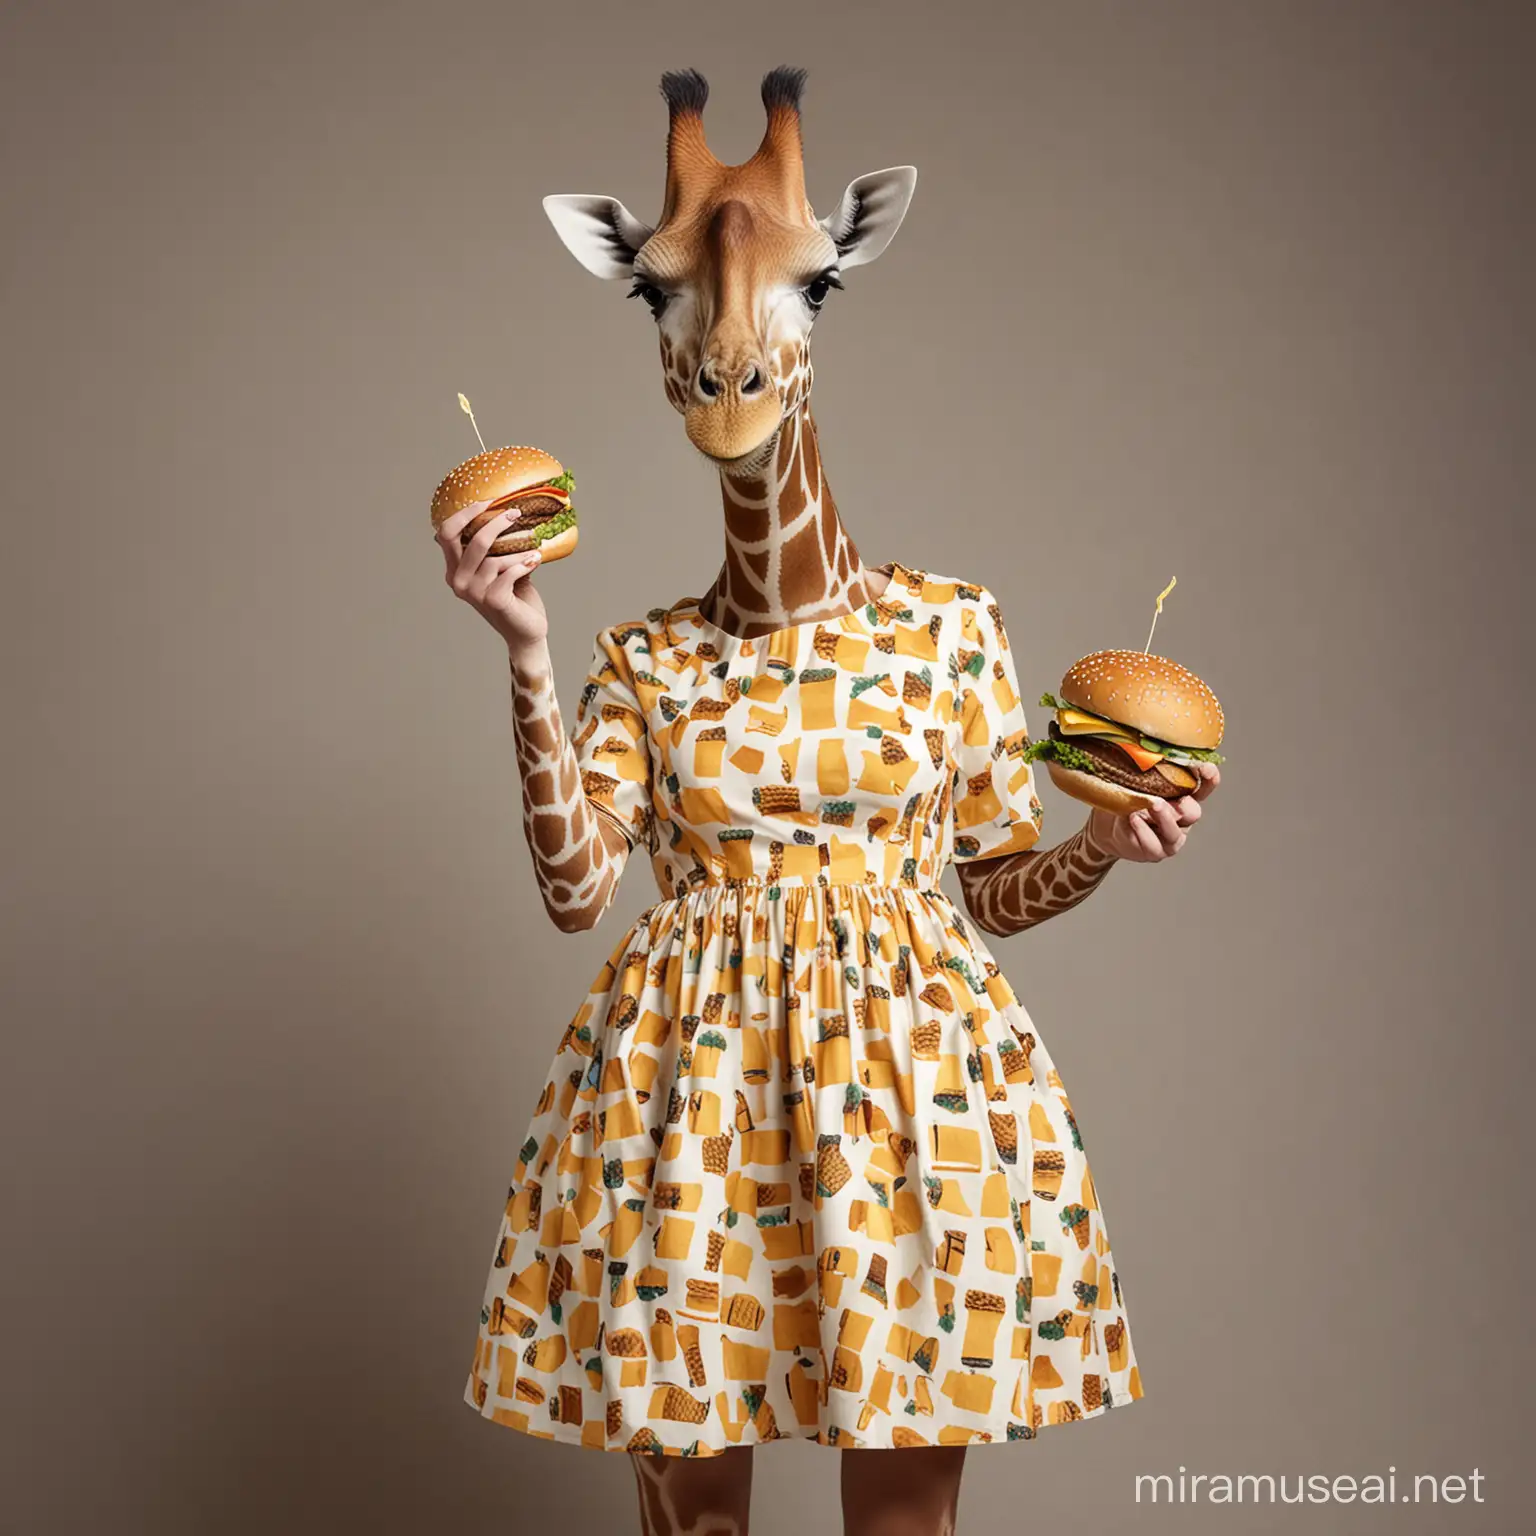 giraffe wear a dress 
and  eat burger